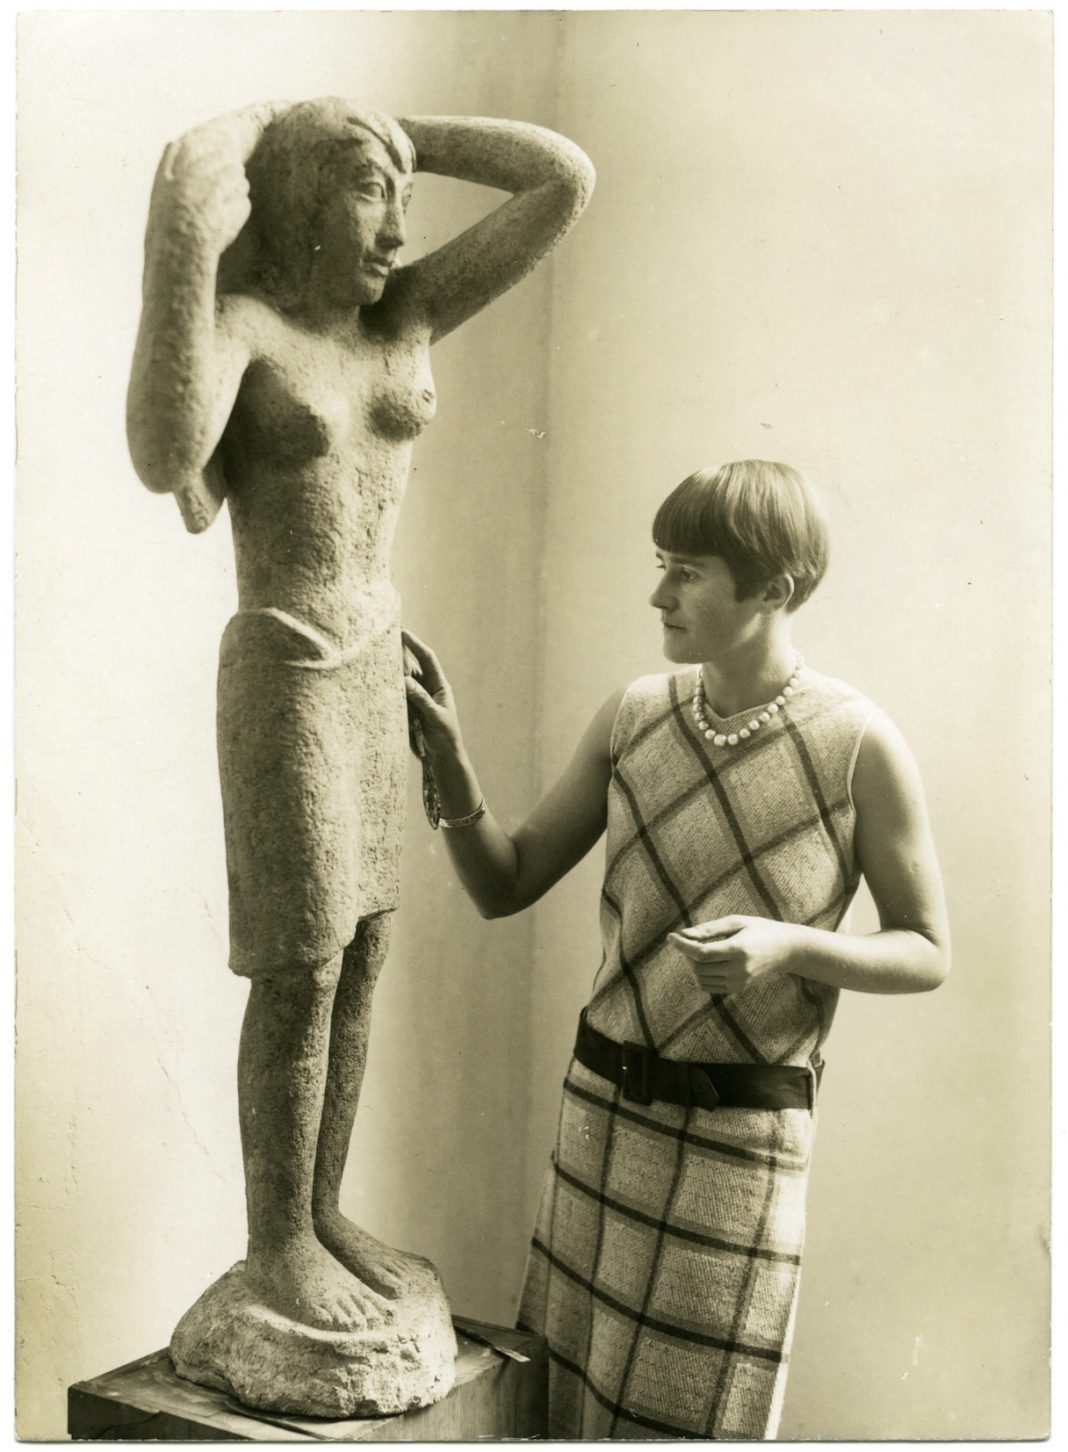 Jenny Wiegmann Mucchi – GENNI: Una scultrice di respiro europeo nella Milano del ‘900https://www.exibart.com/repository/media/formidable/11/Genni-con-la-scultura-Ragazza-con-un-panno-o-Bagnante-1929-LEGGERA-1068x1452.jpeg